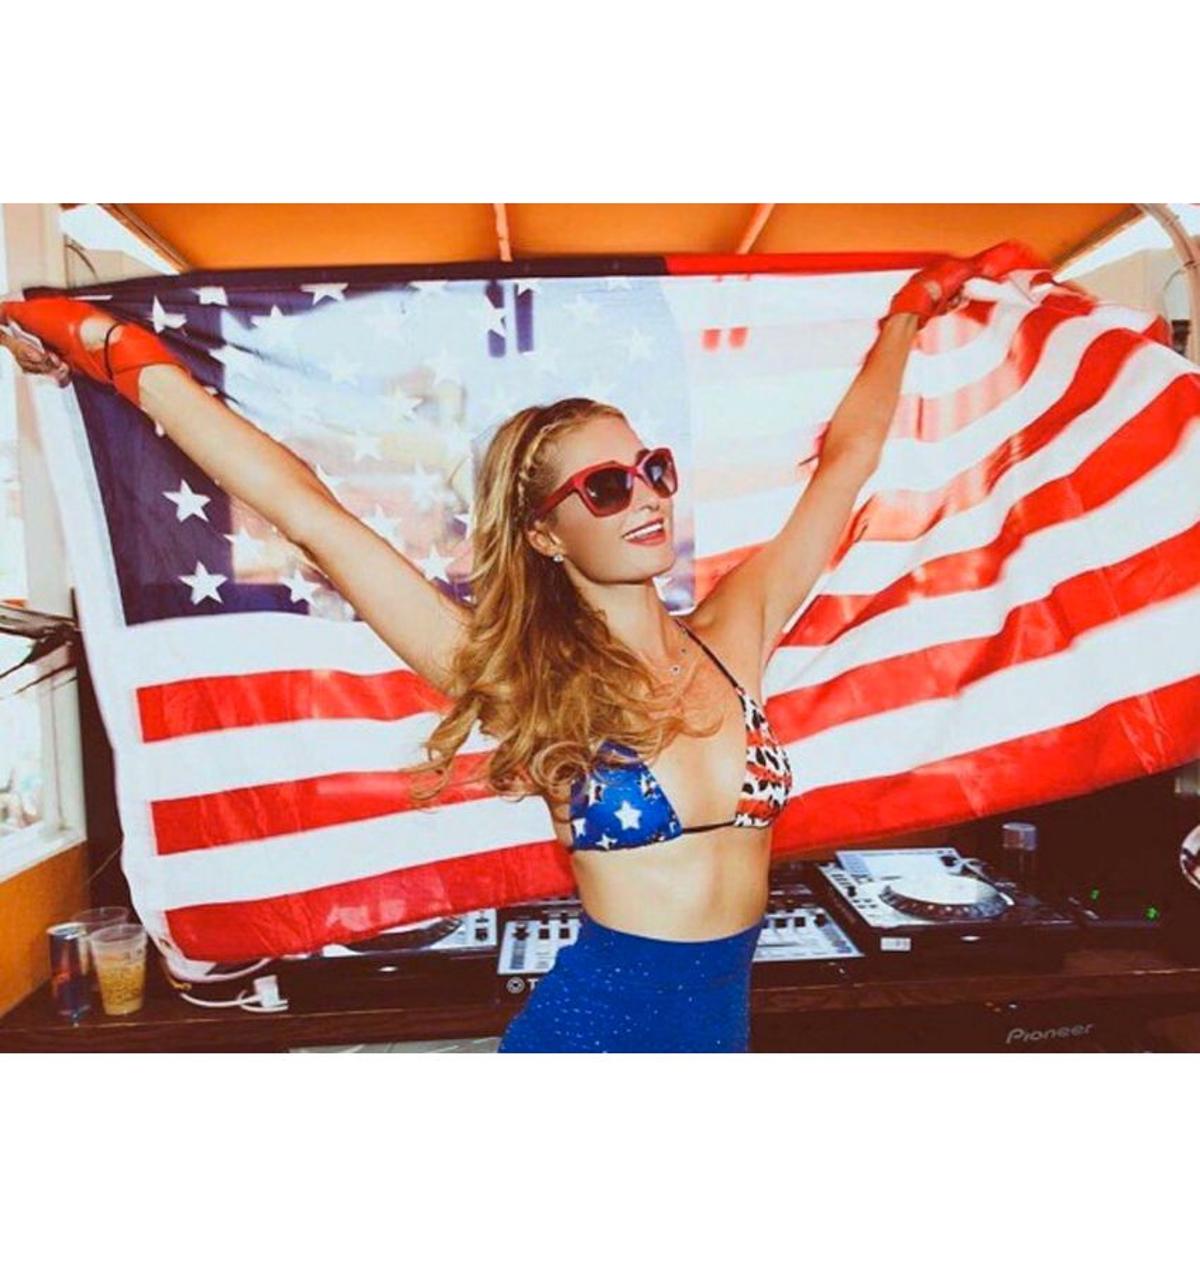 Paris Hilton en bikini de barras y estrellas por el 4 de julio